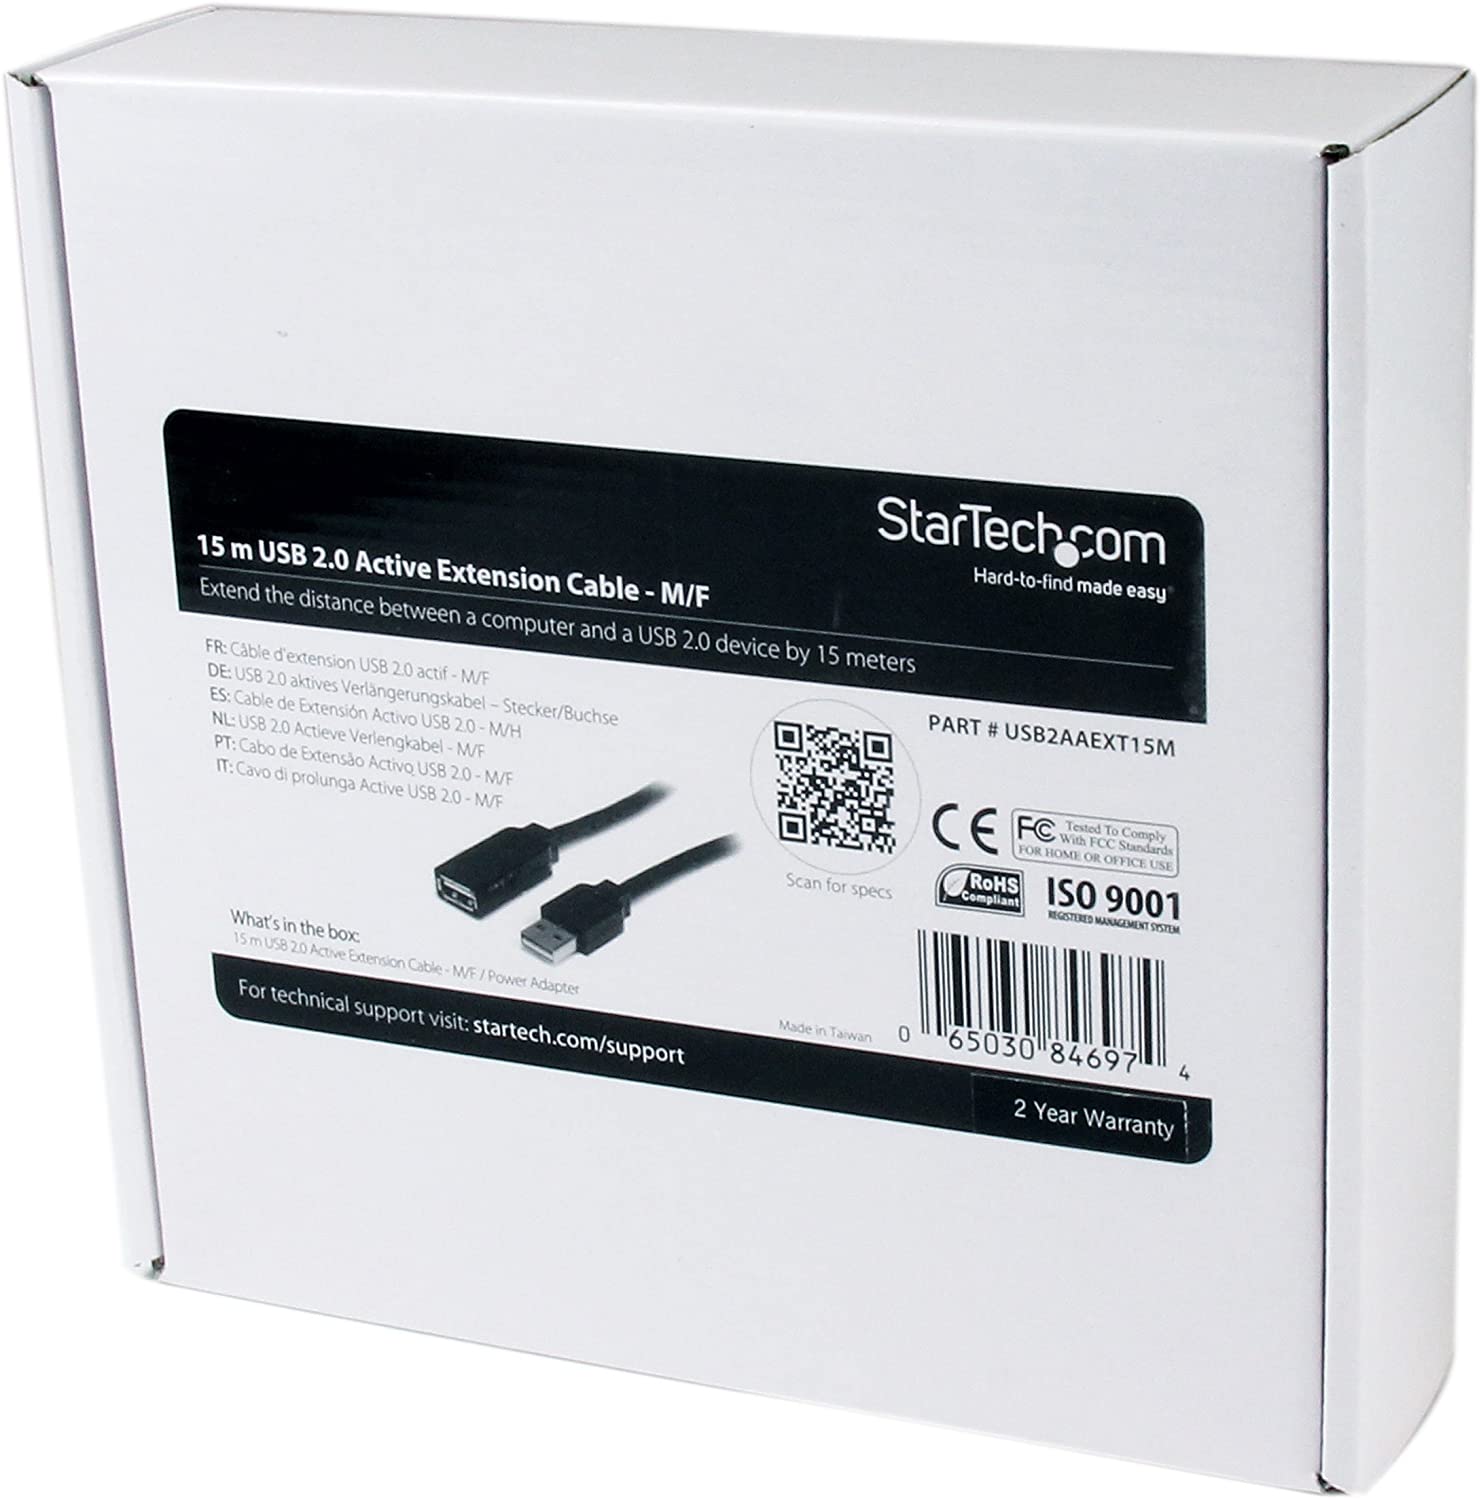 StarTech 15M USB 2.0 ACTIVE EXTENSION CABLE(USB2AAEXT15M) - Win-Pro Consultancy Pte Ltd